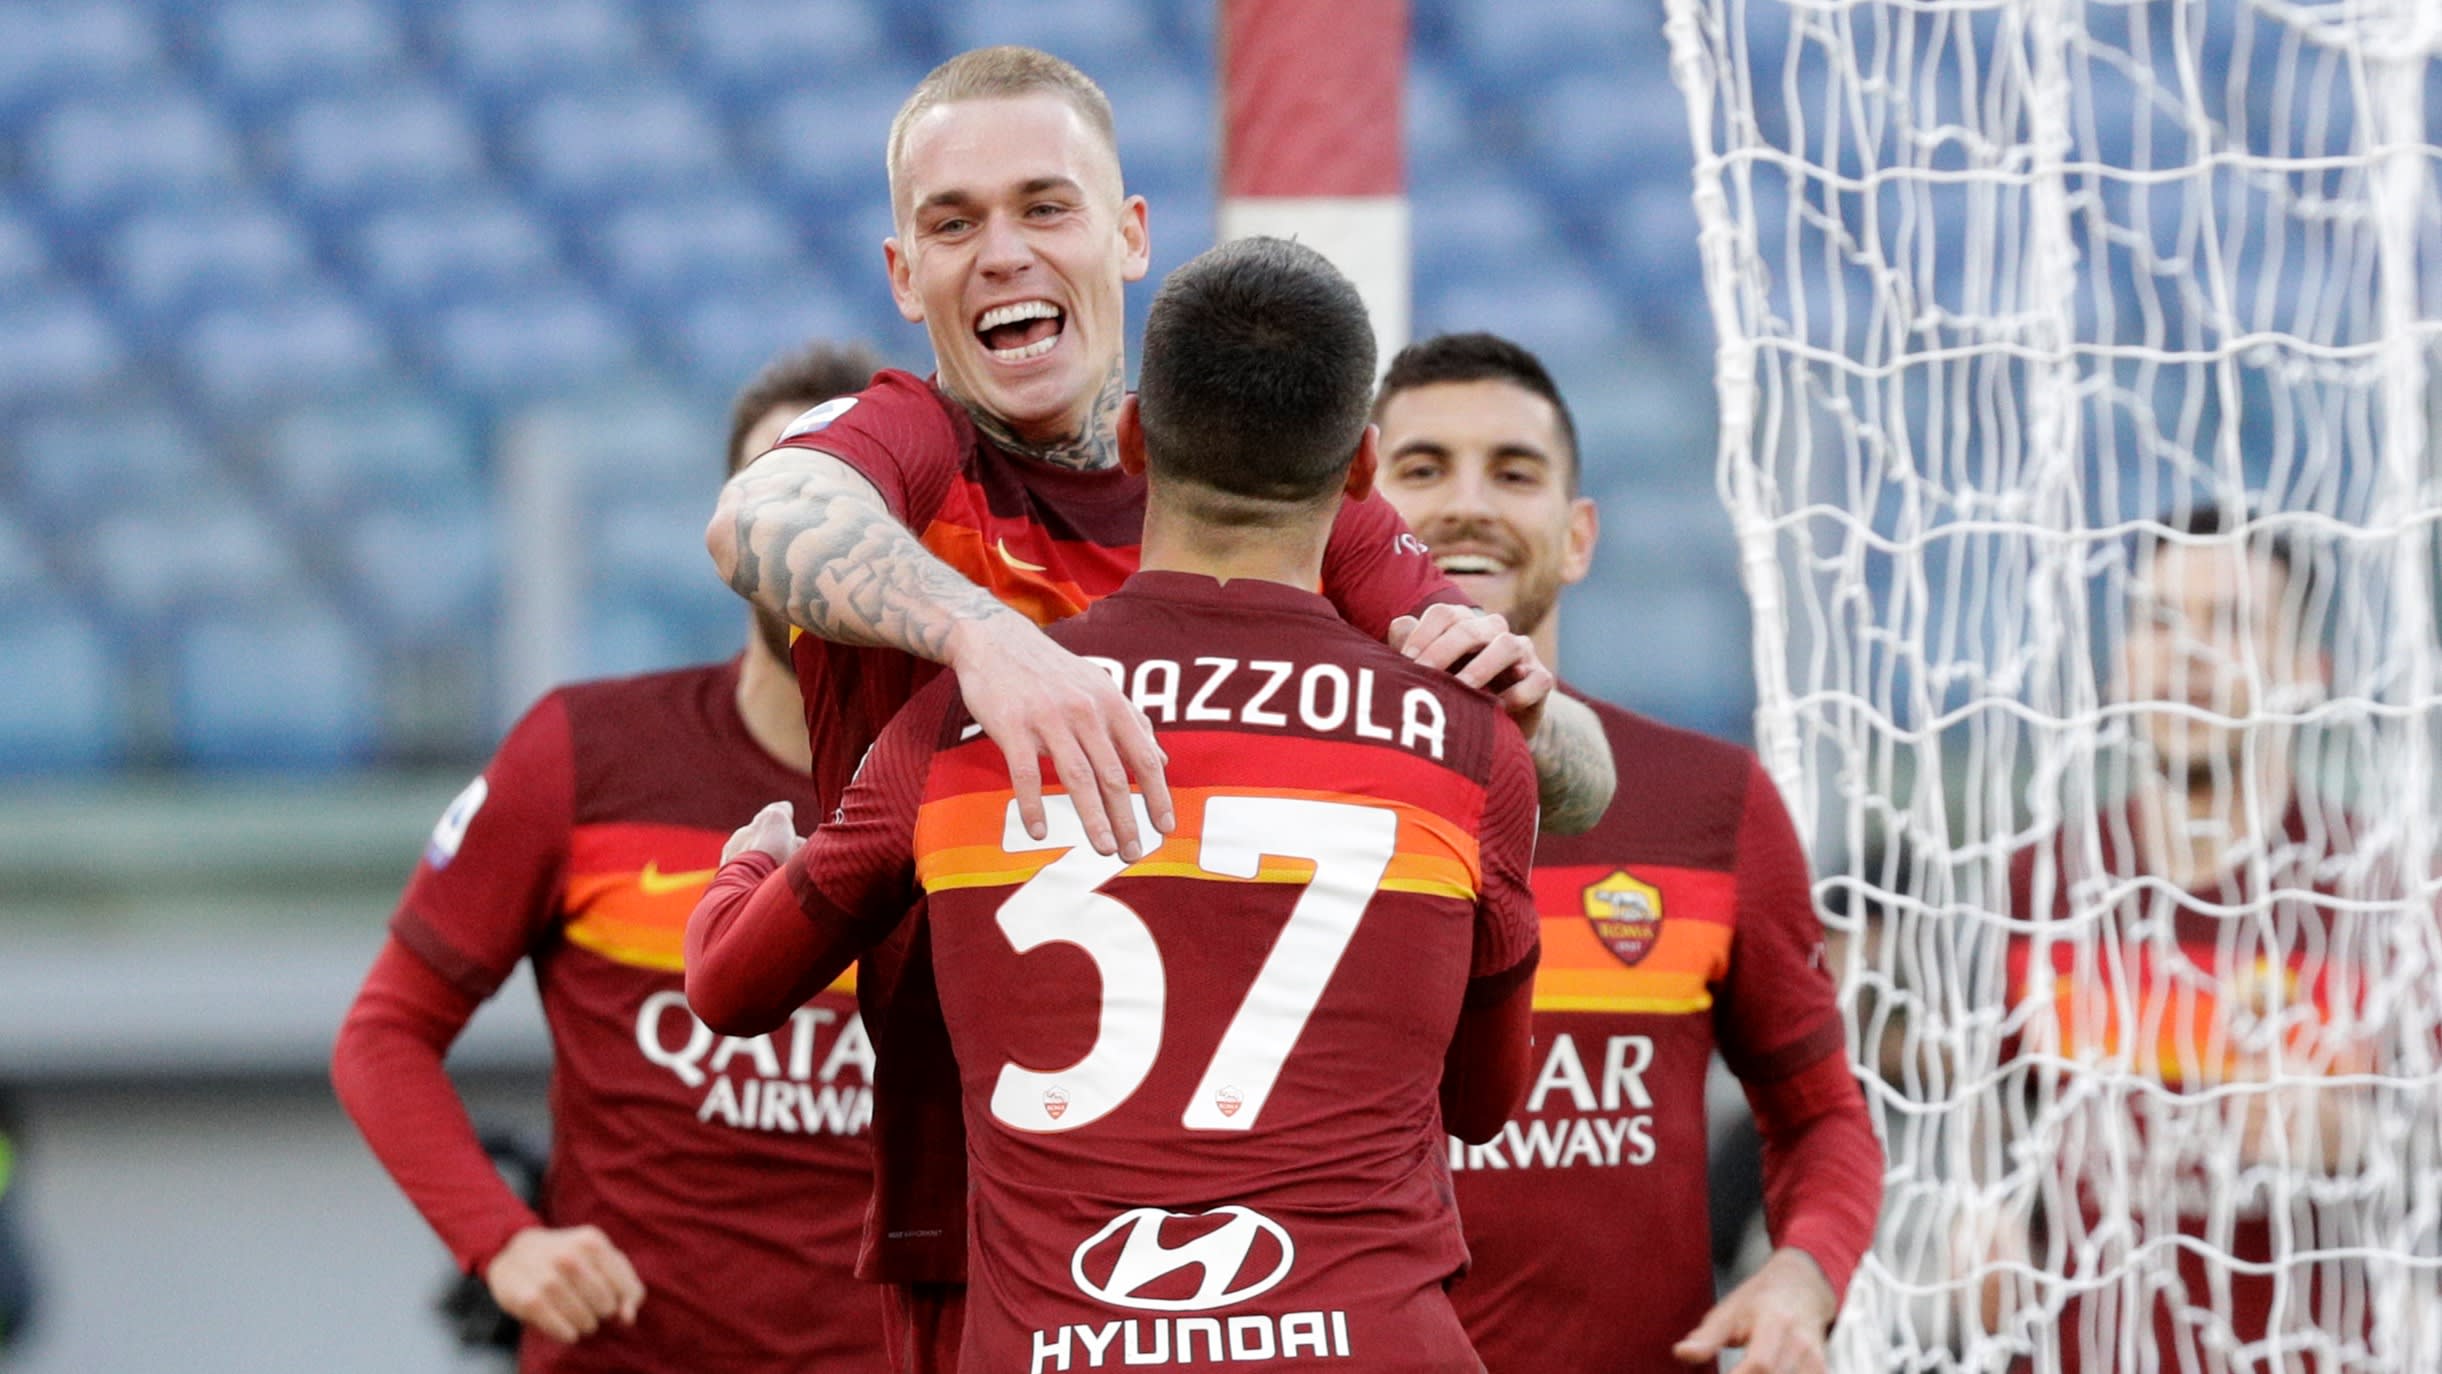 'Karsdorp verlengt contract bij Roma met vier jaar'